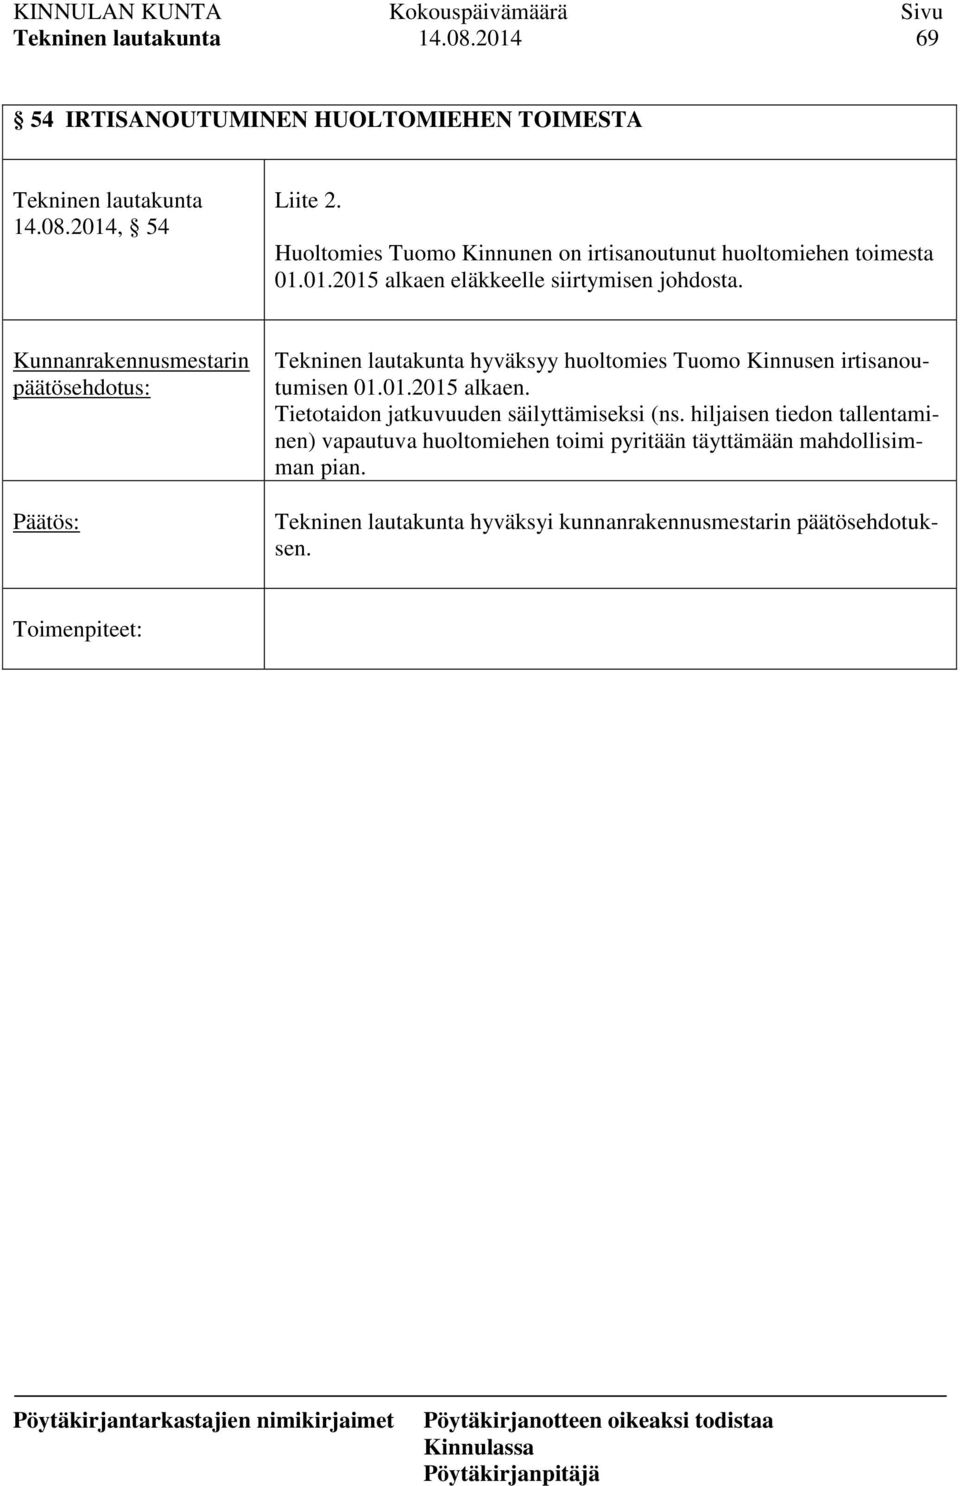 päätösehdotus: hyväksyy huoltomies Tuomo Kinnusen irtisanoutumisen 01.01.2015 alkaen.